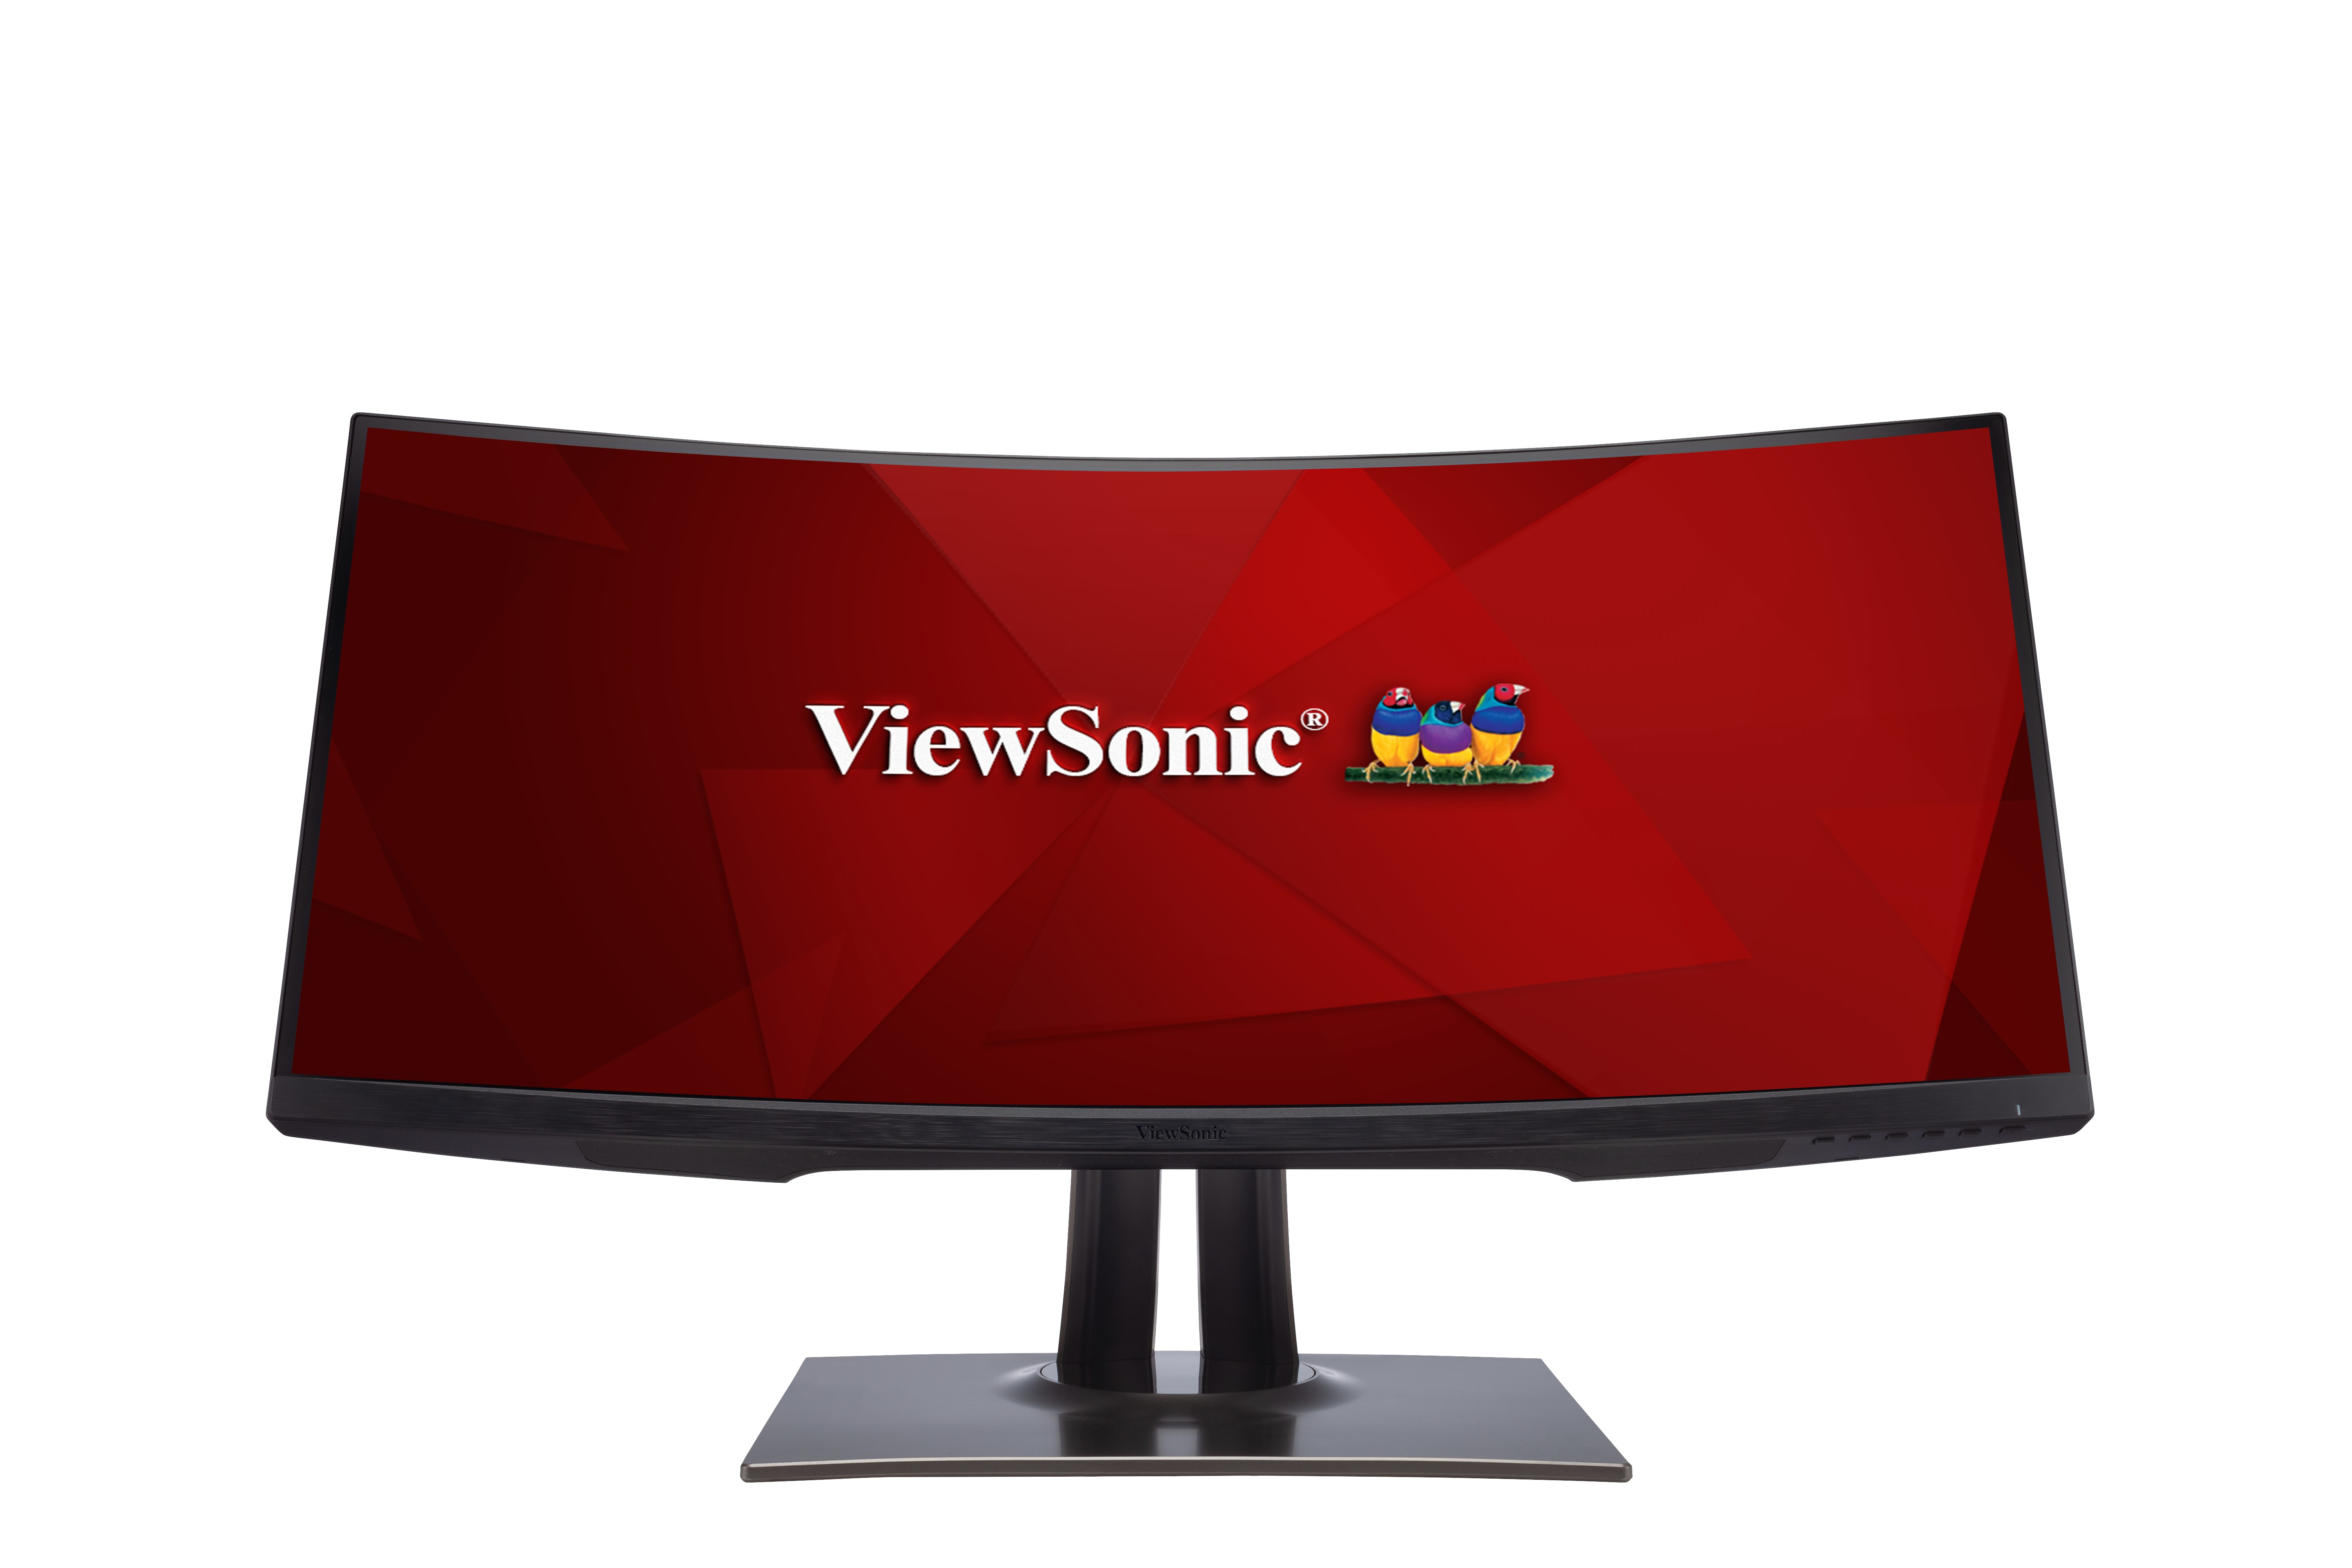 Viewsonic VP Series VP3481 LED display